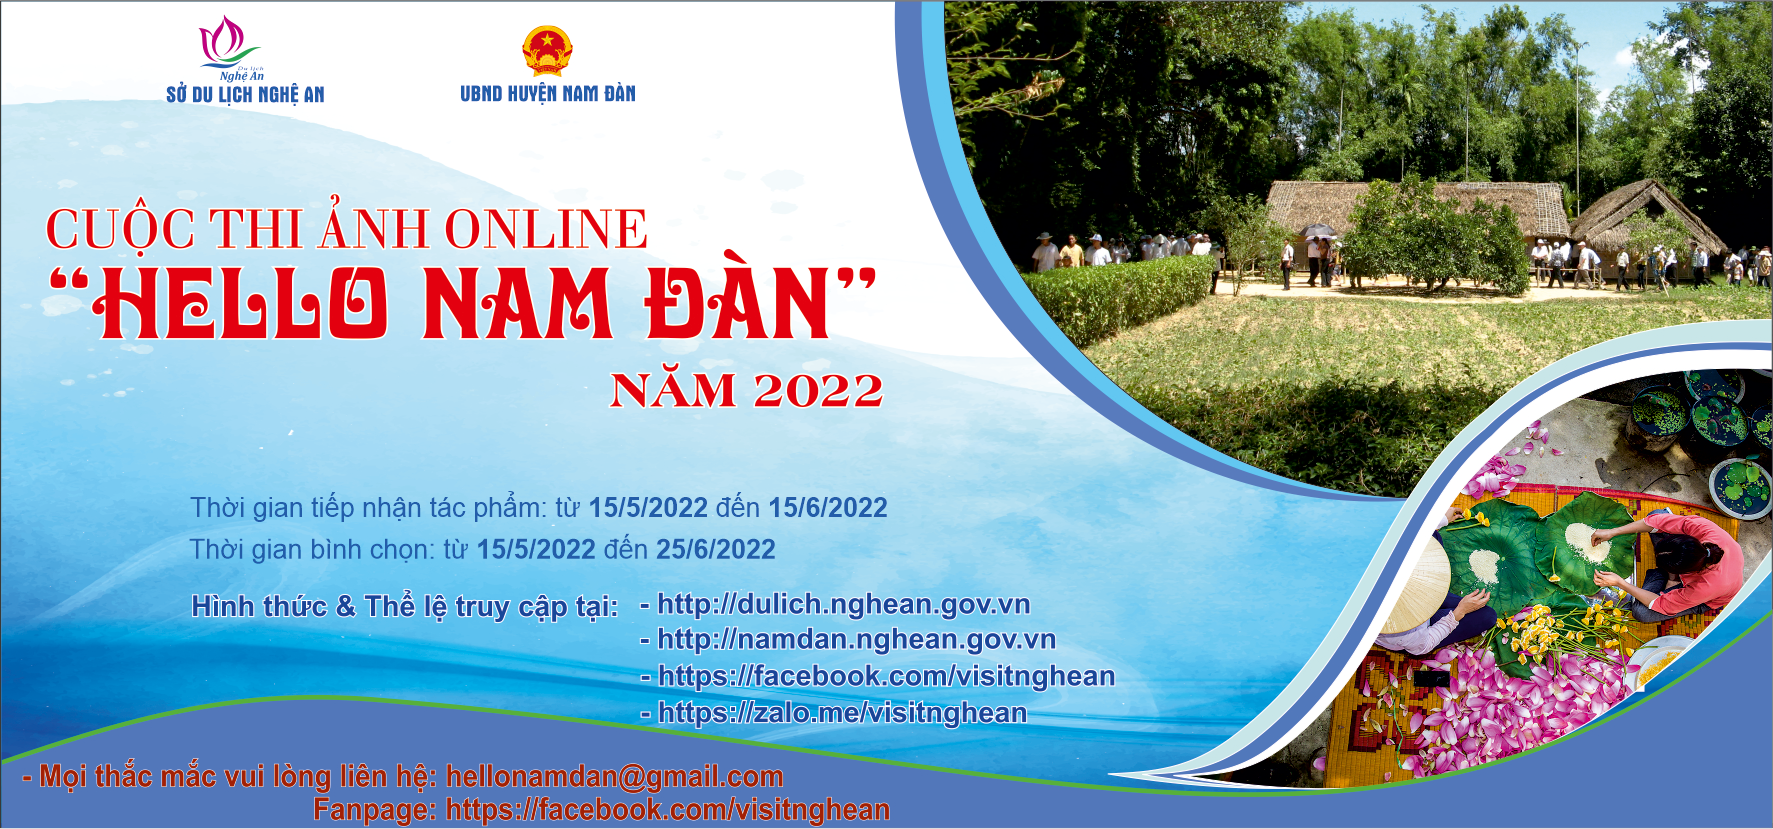 Cuộc thi ảnh online "Hello Nam Đàn" năm 2022